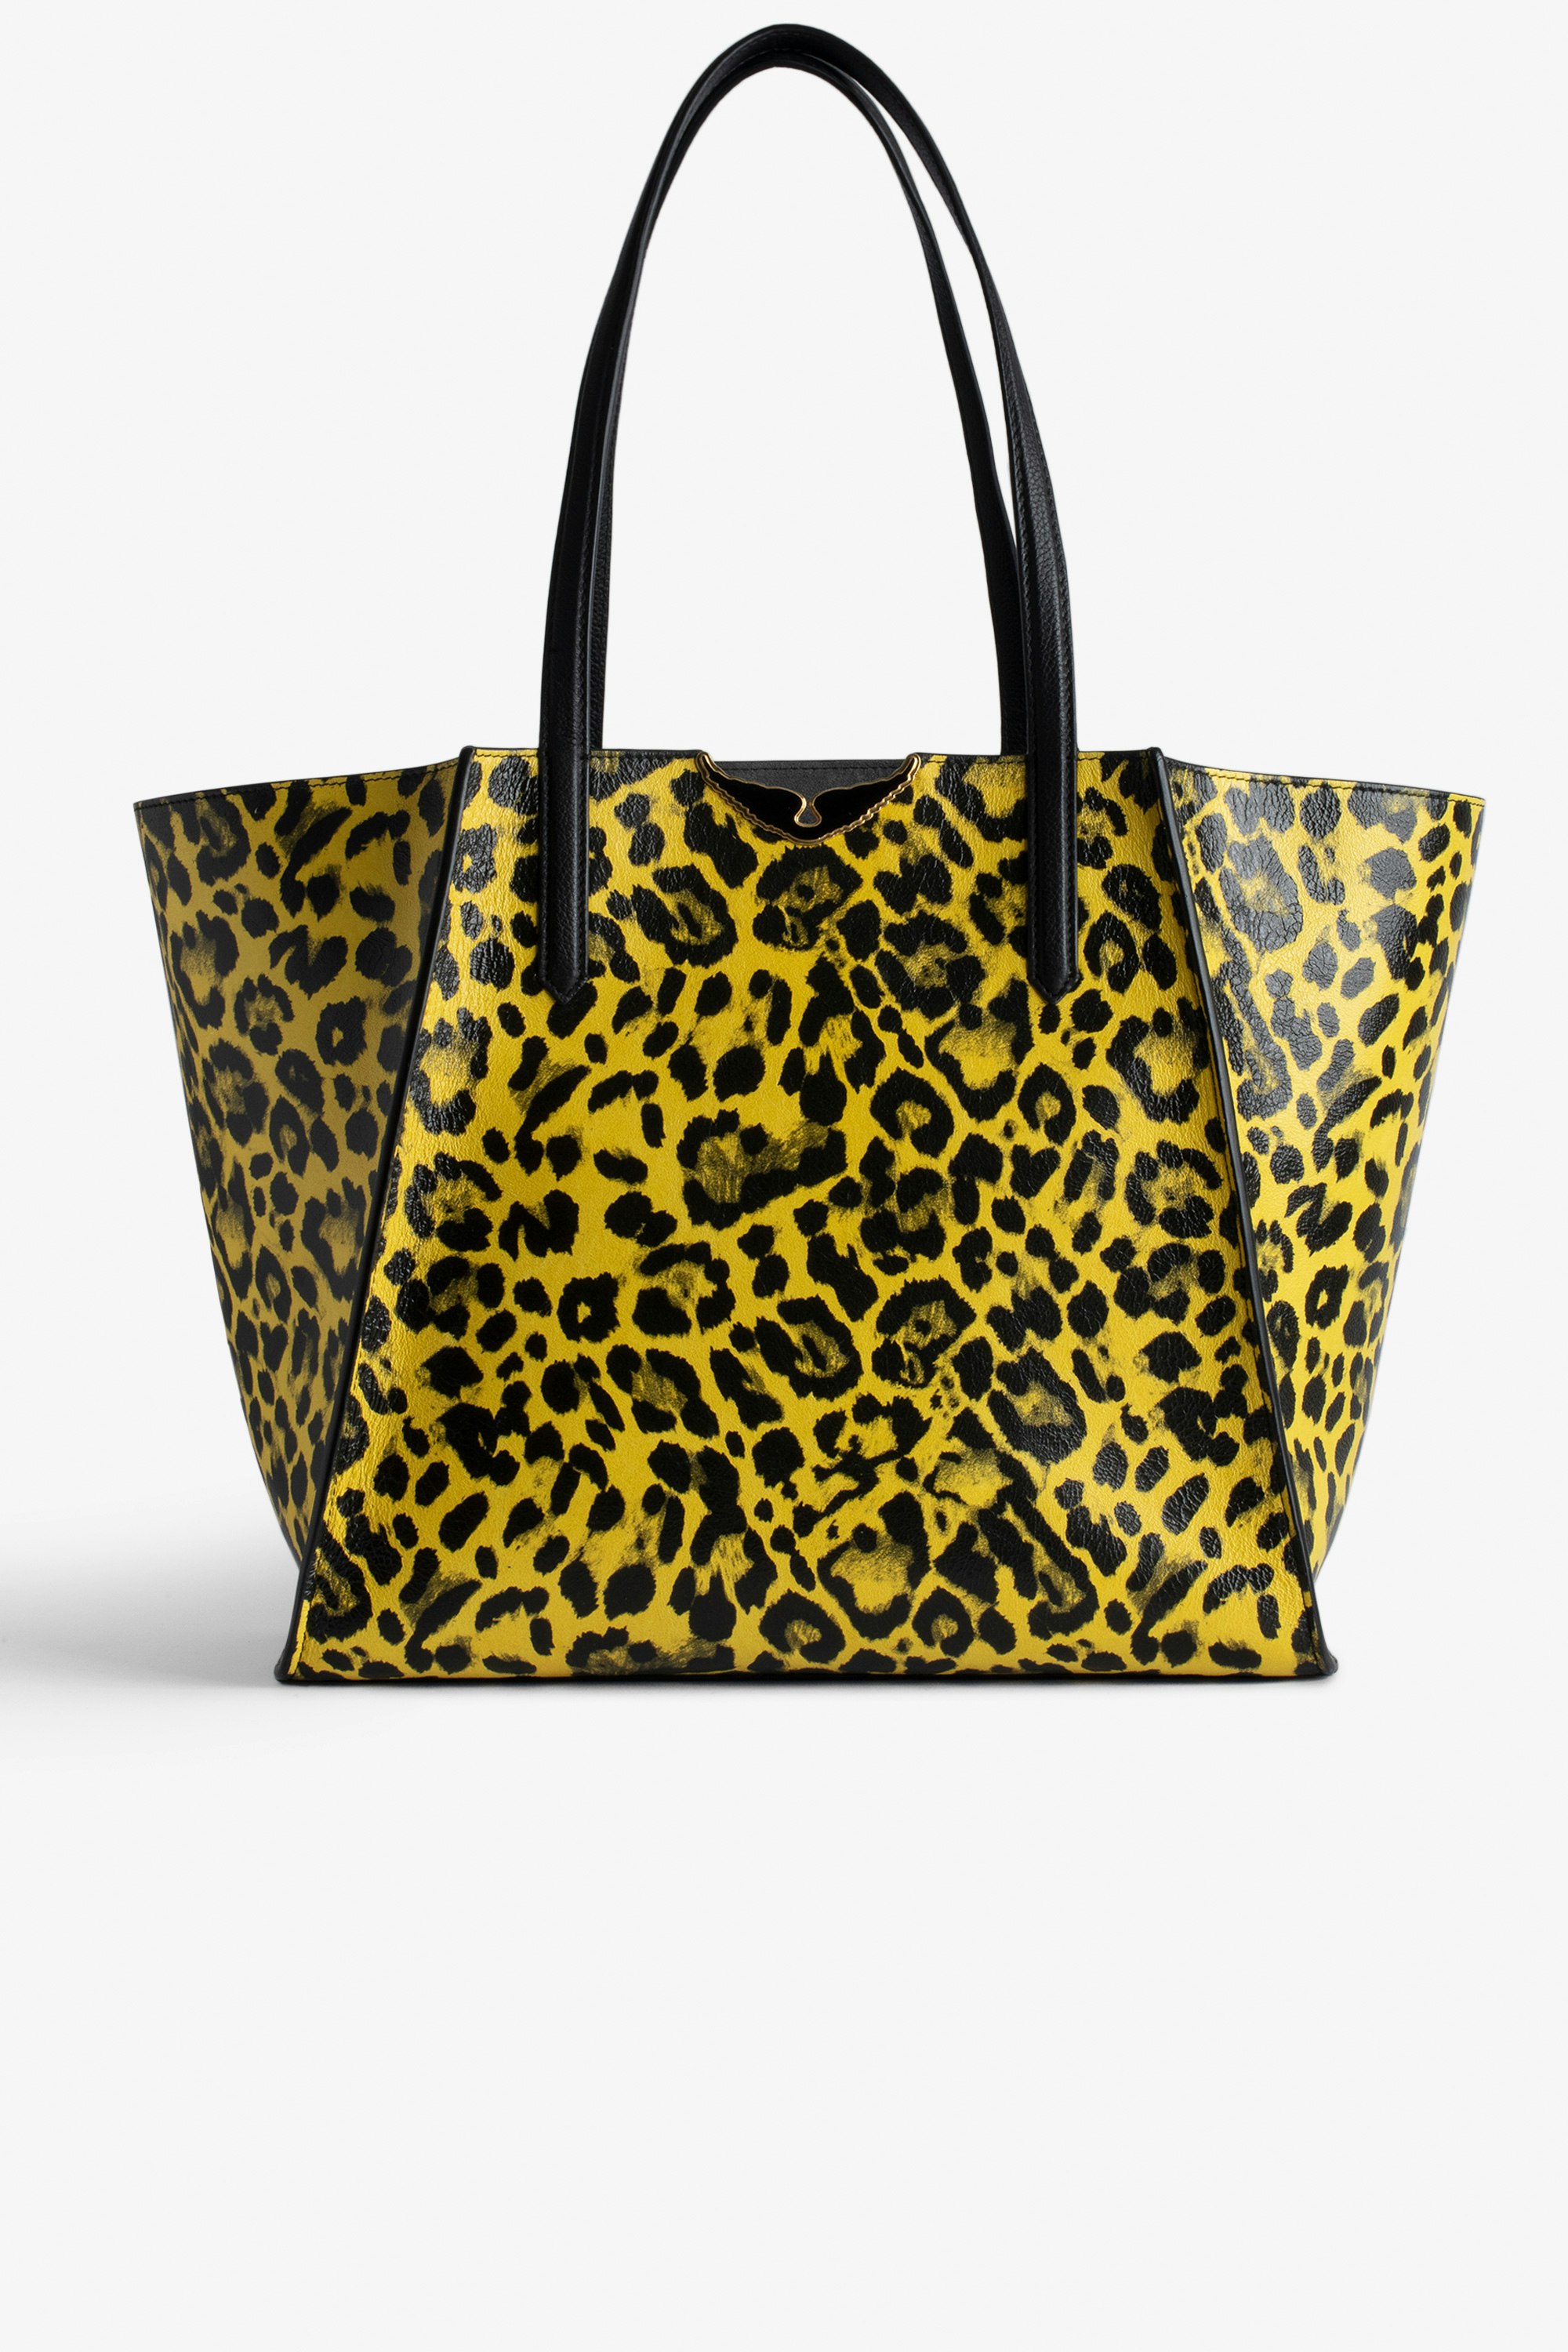 Borsa Le Borderline leopardata Borsa cabas reversibile in pelle lucida gialla stampa leopardata con manico e ali in metallo da donna.